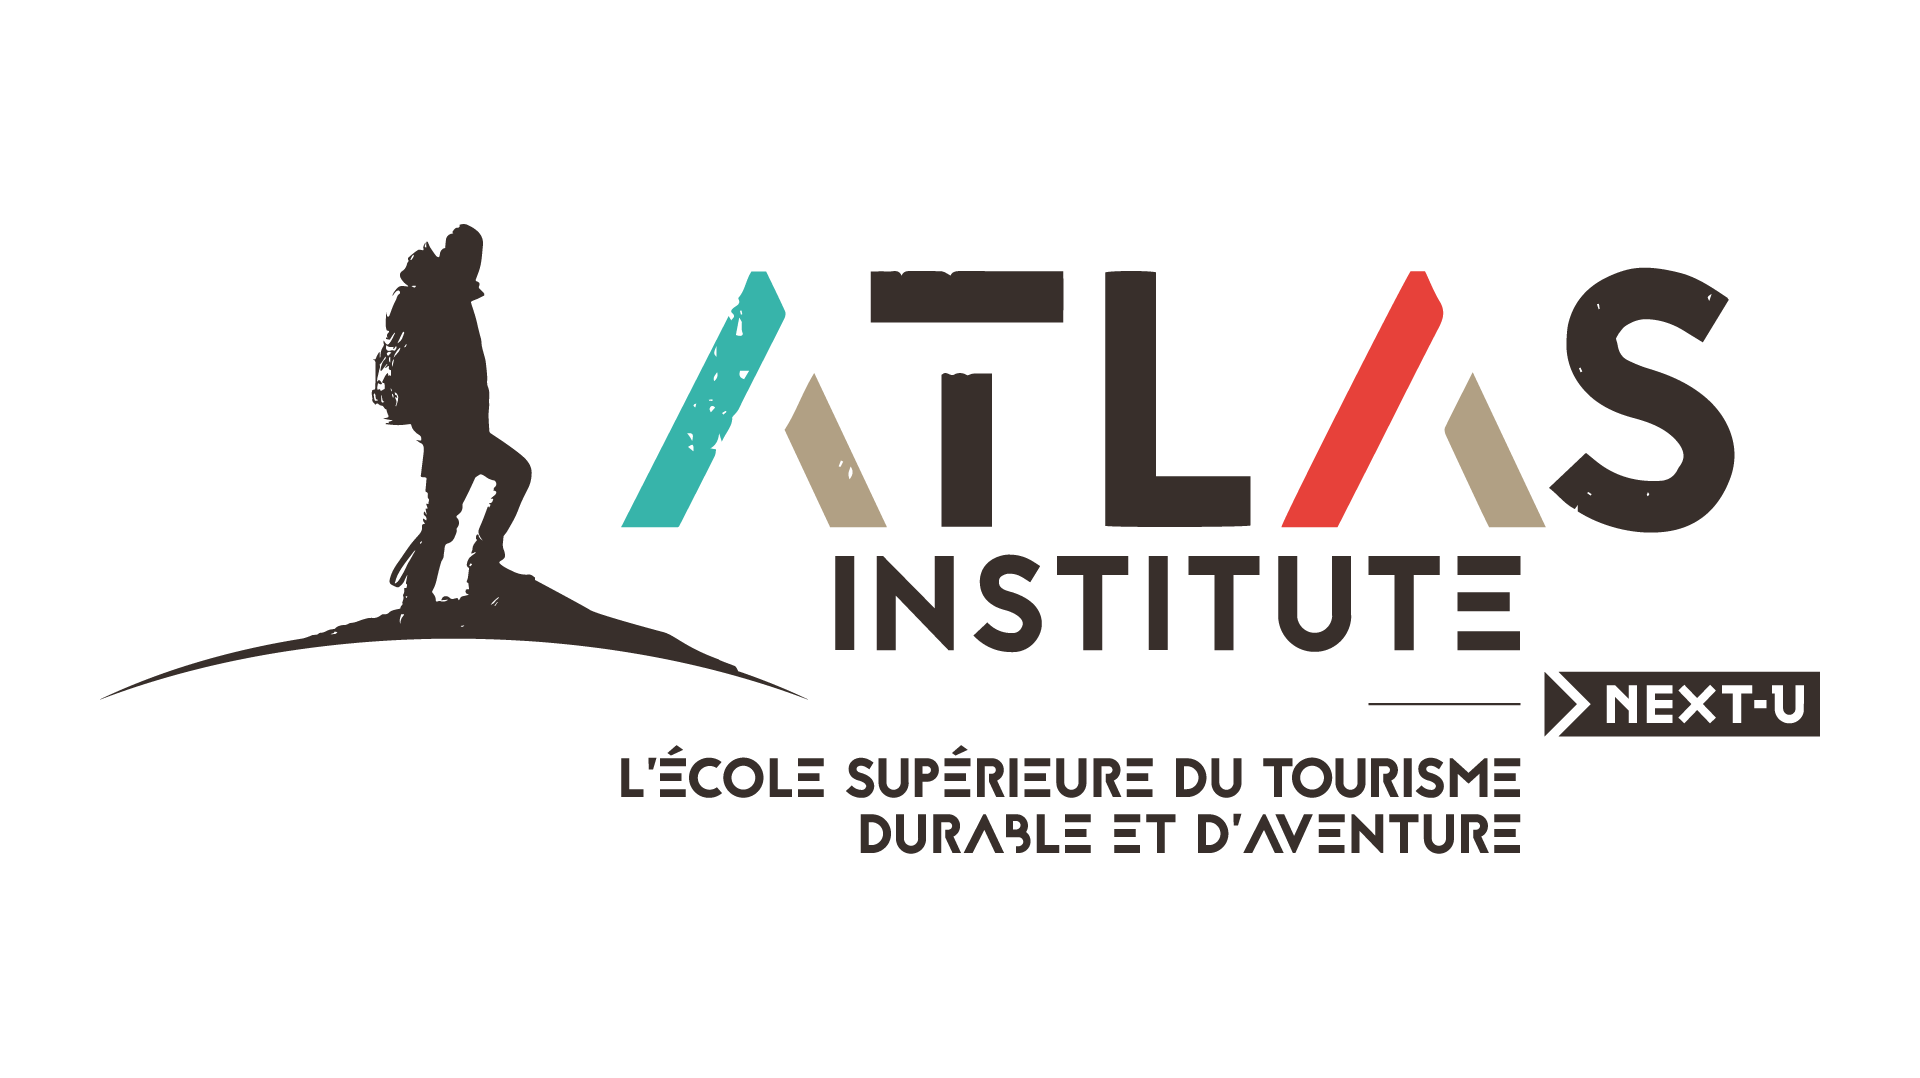 La première promotion Atlas Institute fera sa rentrée en septembre 2019. - DR Next-U